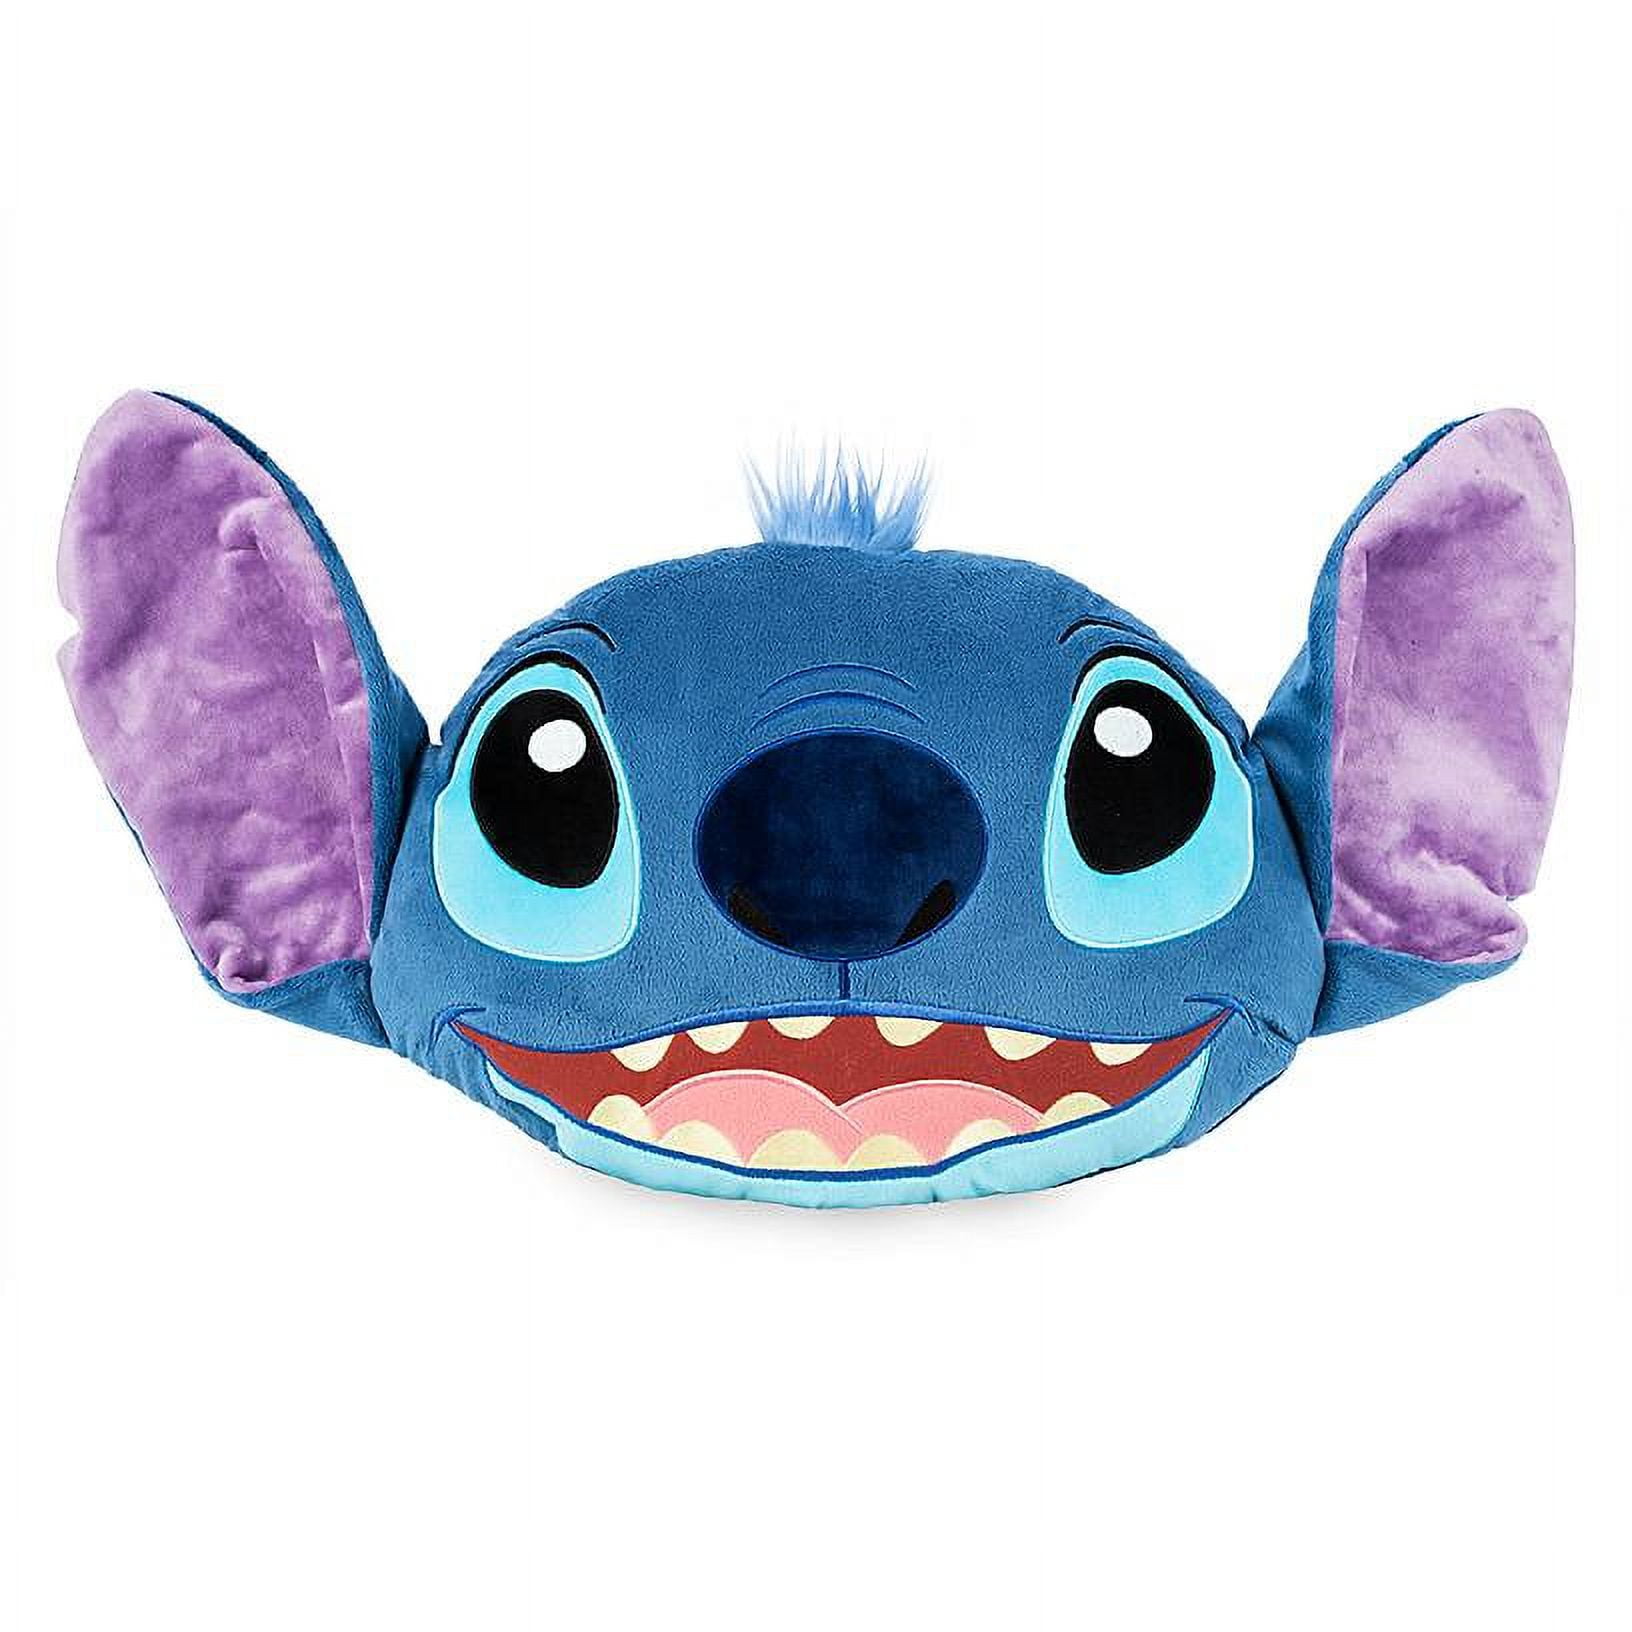 Chausson stitch taille 26 - Disney